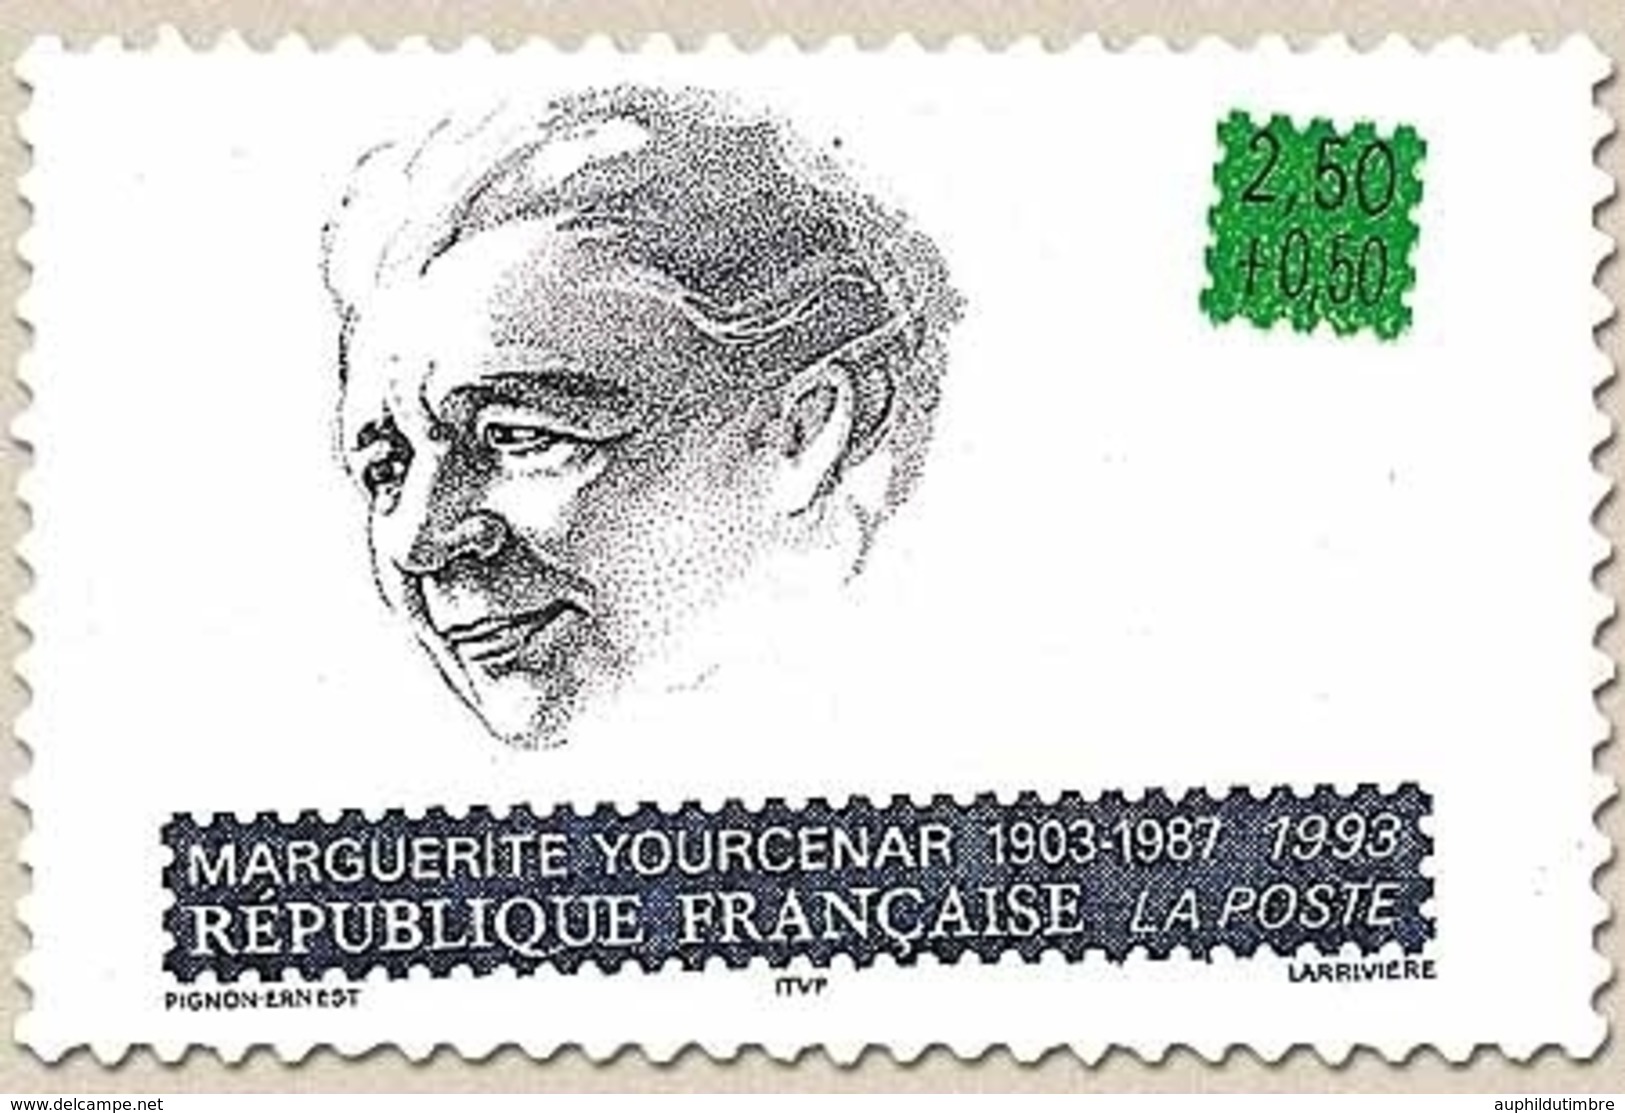 Personnages Célèbres. Ecrivains Français. Marguerite Yourcenar (1903-1987)  2f.50 + 50c. Bleu, Vert Et Noir Y2804 - Unused Stamps